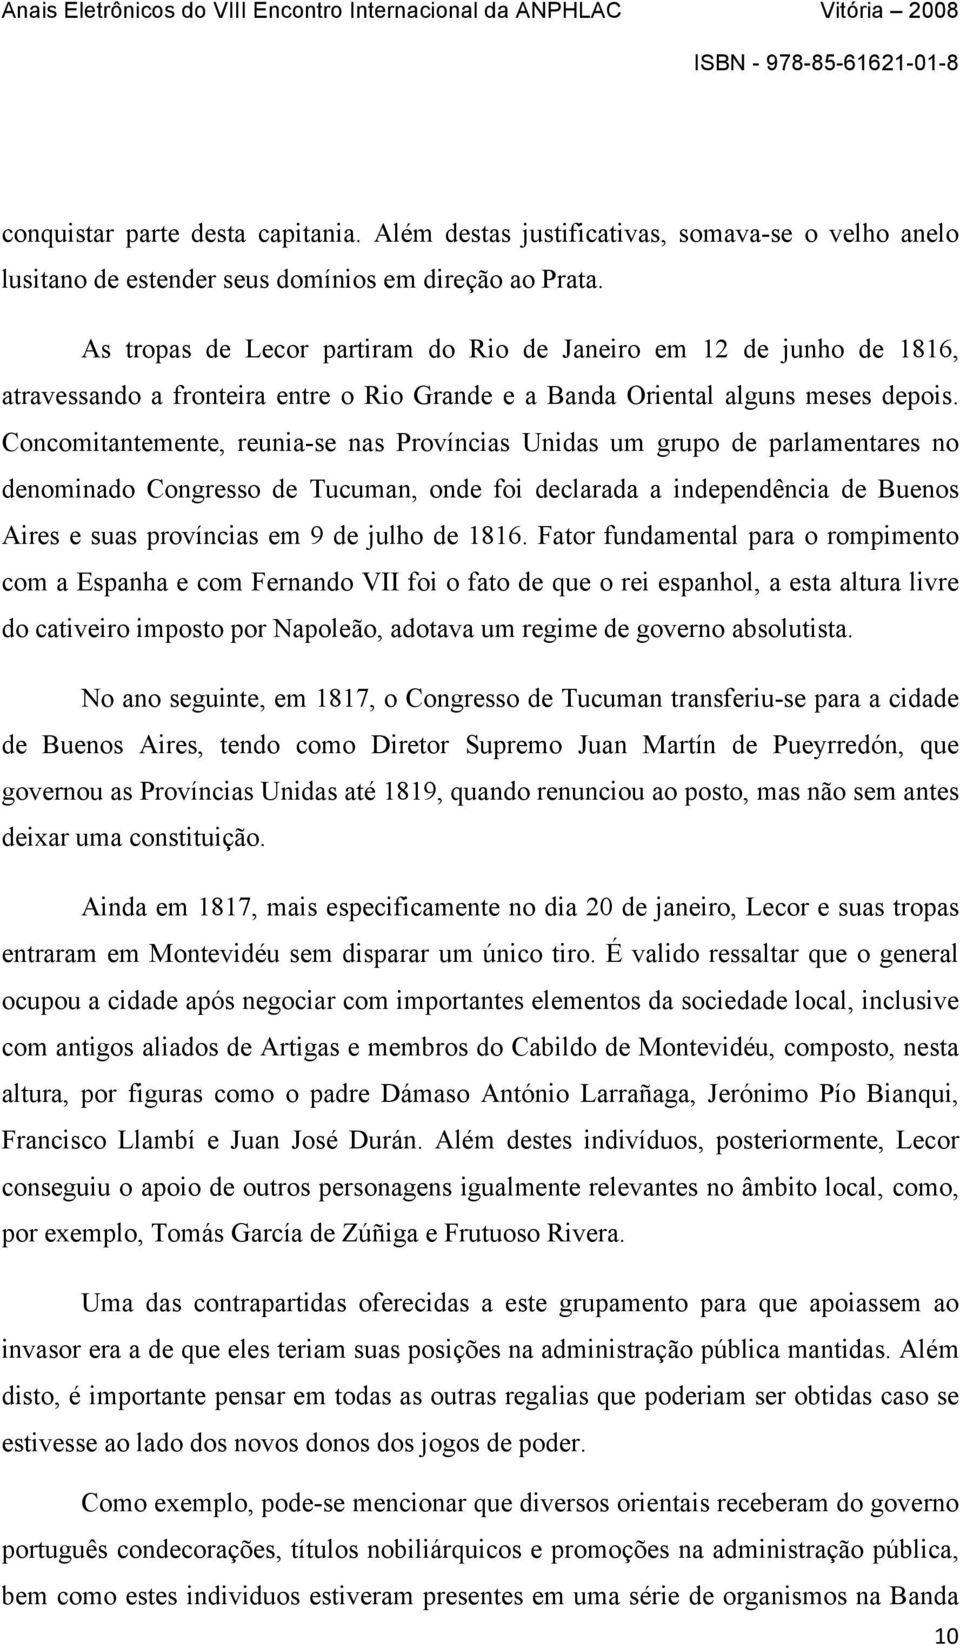 Concomitantemente, reunia-se nas Províncias Unidas um grupo de parlamentares no denominado Congresso de Tucuman, onde foi declarada a independência de Buenos Aires e suas províncias em 9 de julho de